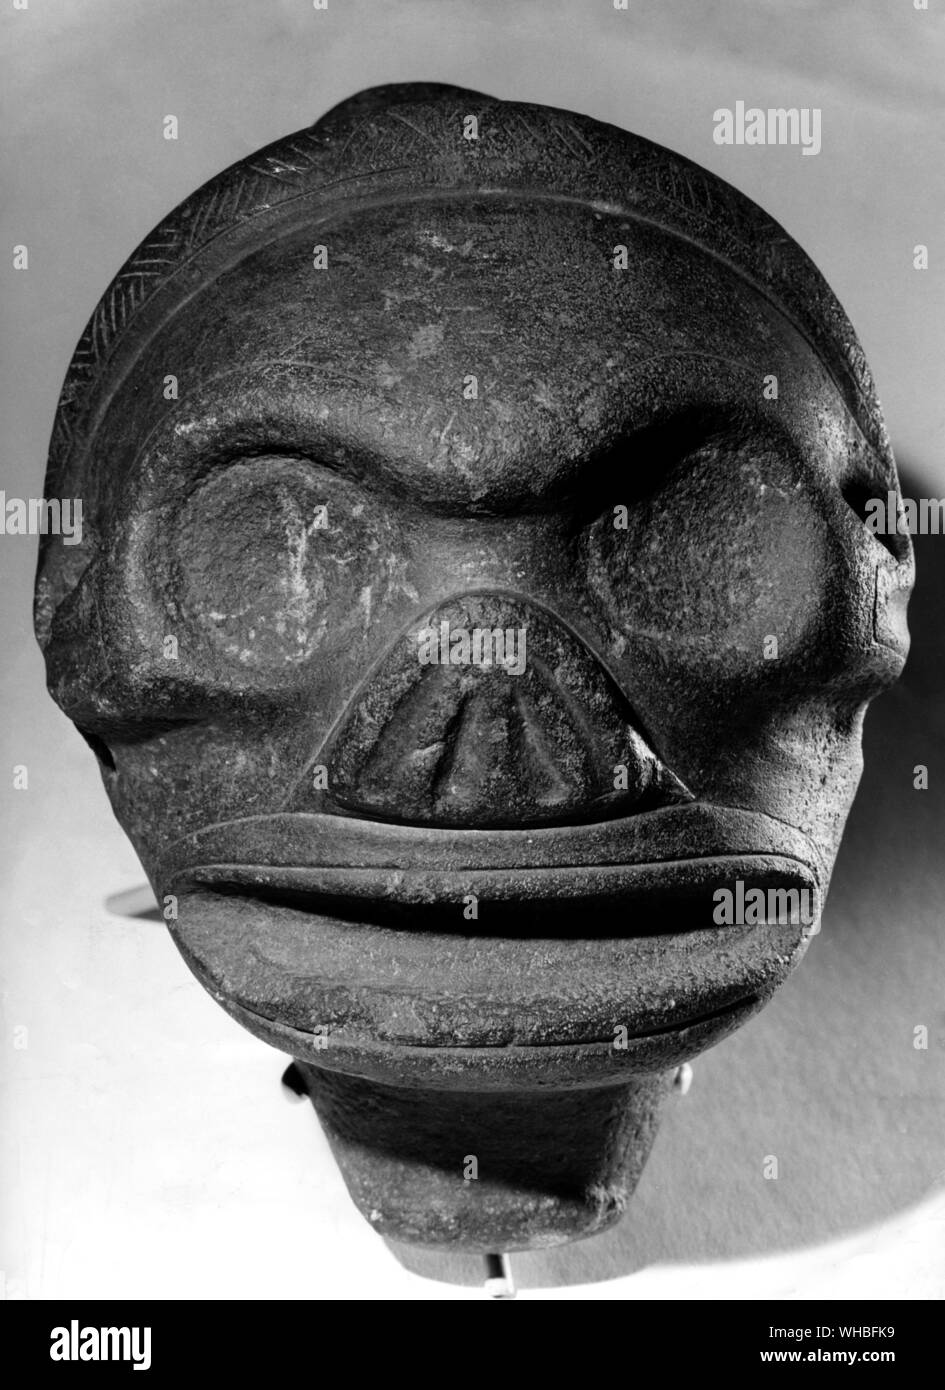 Tete squelettique en basalte noir sculpte squelette : sculpture de basalte noir de l'ancienne civilisation de l'Arawak Taino People , Puerto Rico , Grandes Antilles Caraïbes , Banque D'Images